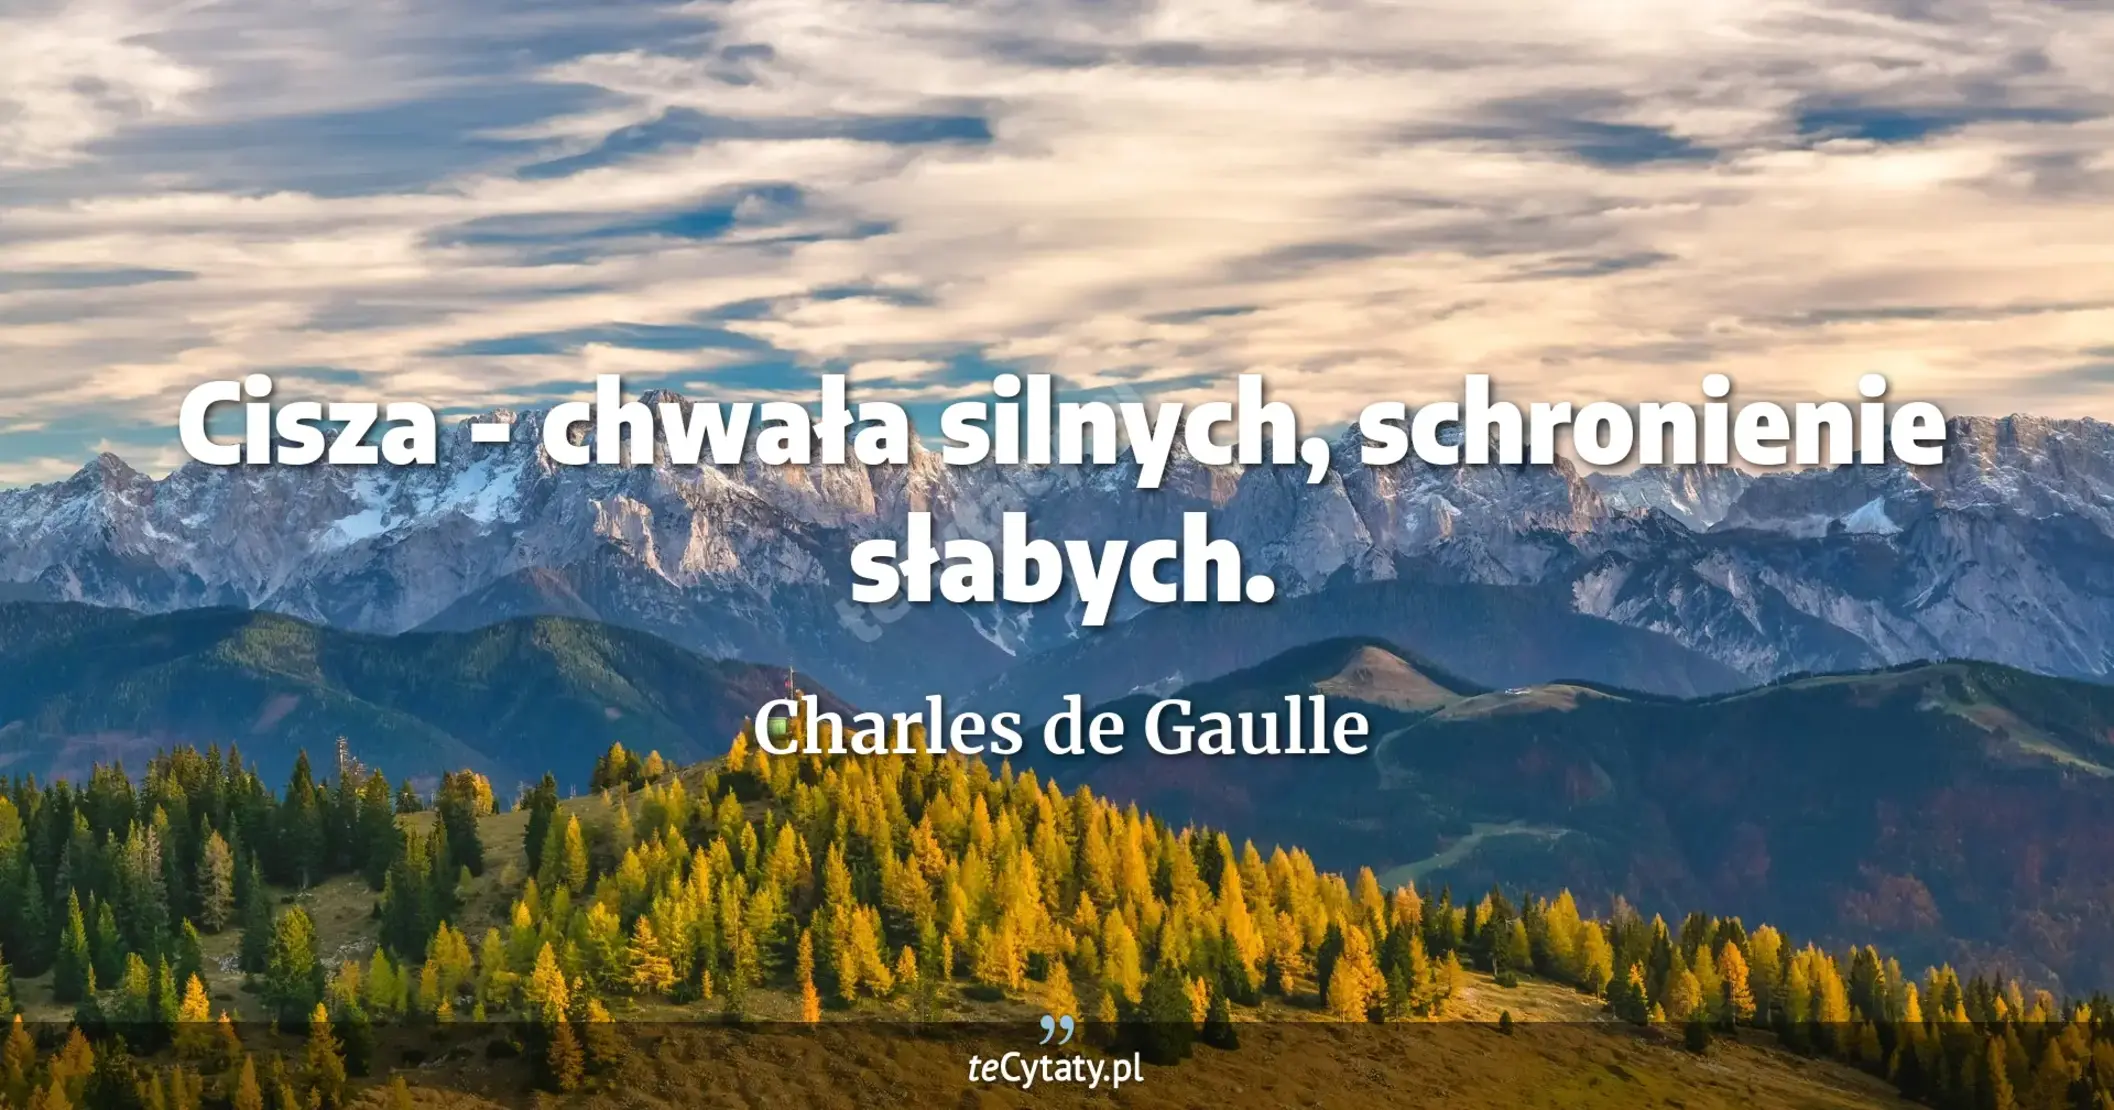 Cisza - chwała silnych, schronienie słabych. - Charles de Gaulle